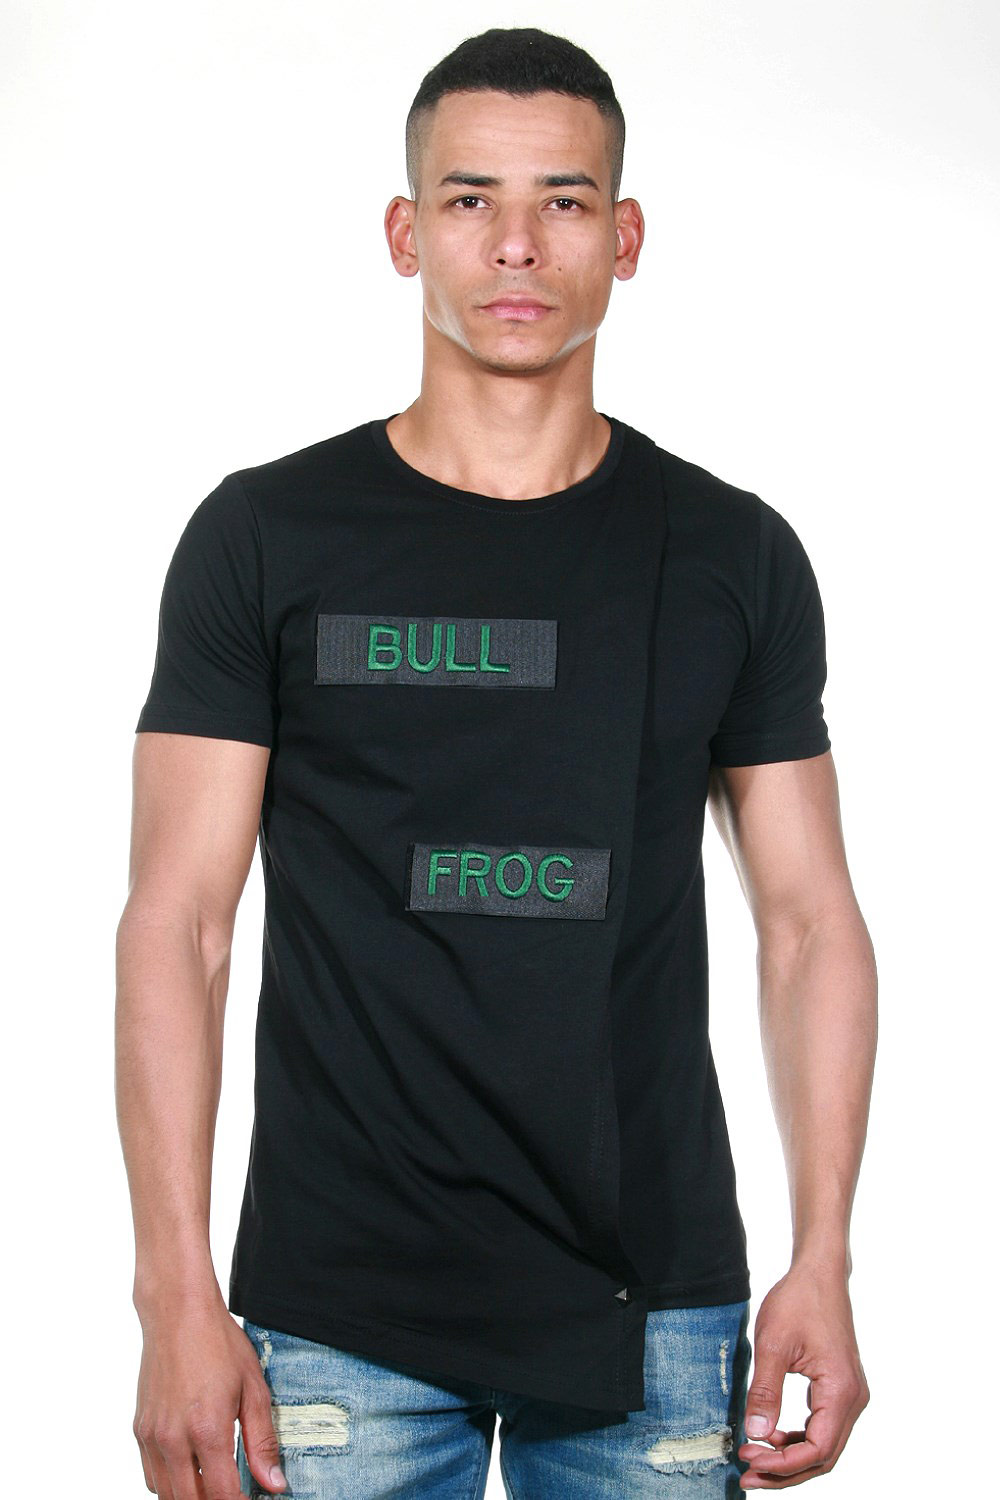 BULLFROG T-shirt at oboy.com